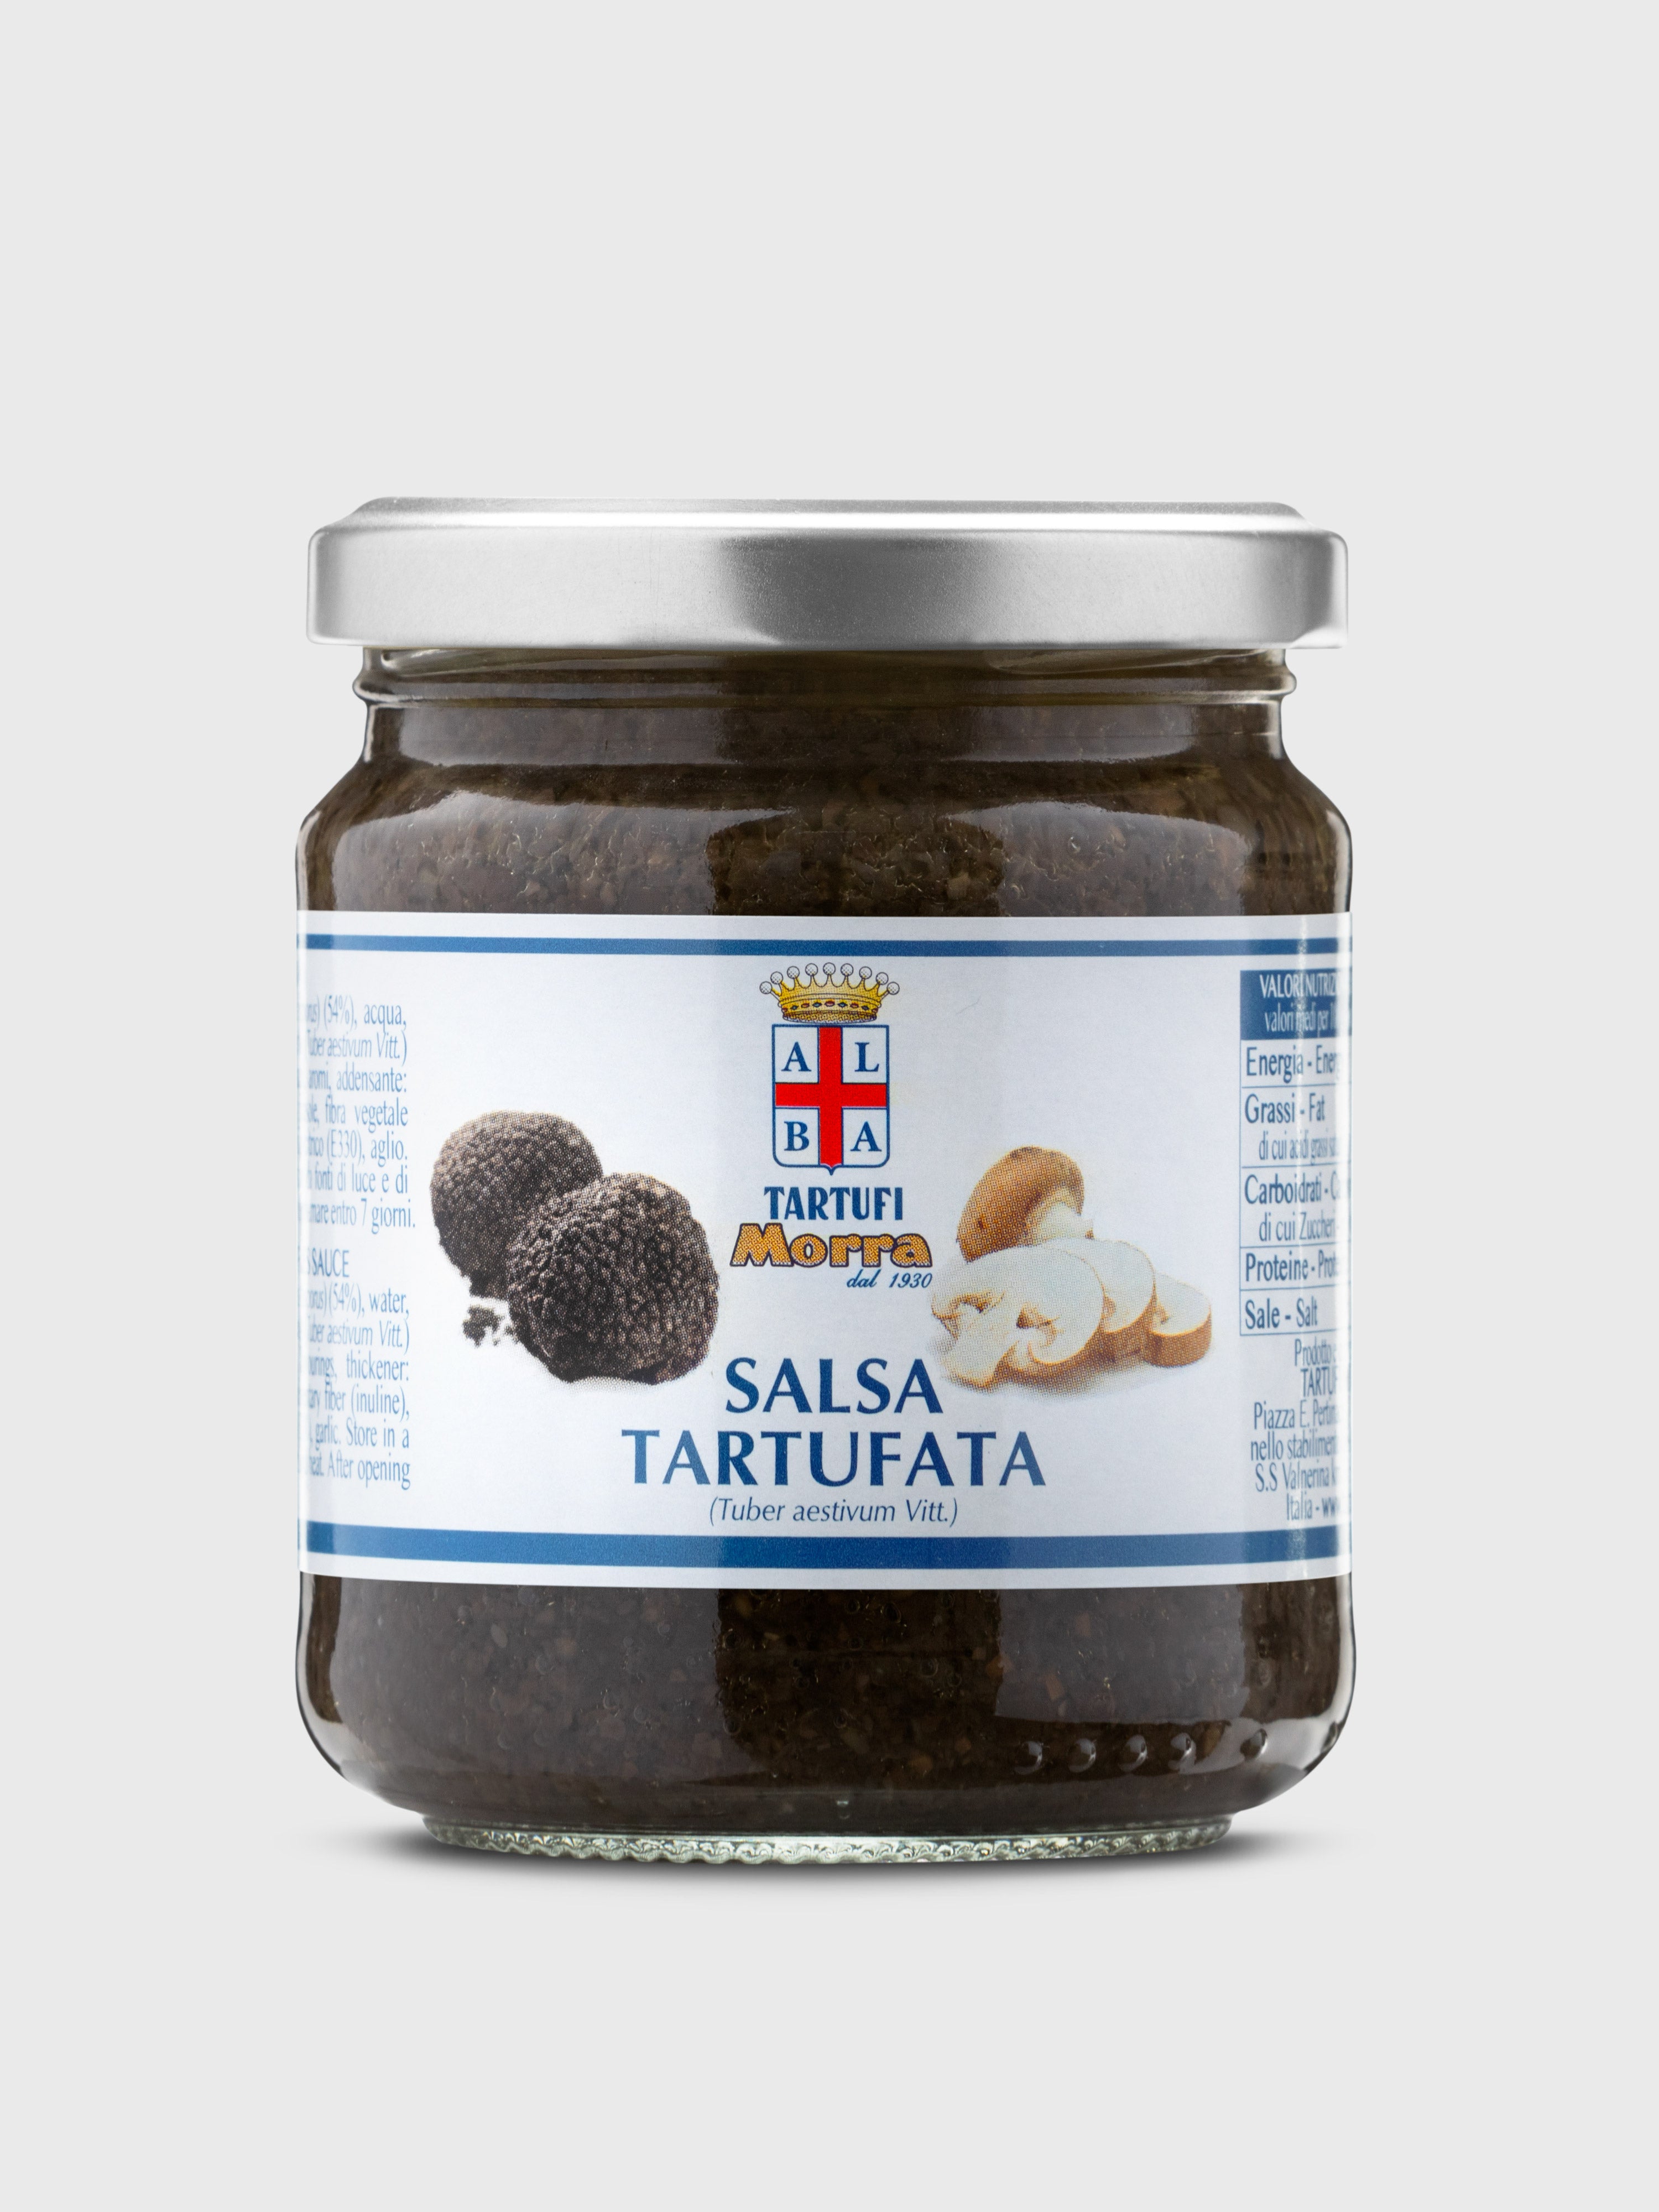 Salsa Tartufata 7% de Truffe - Sauce à la Truffe - Truffes&Co